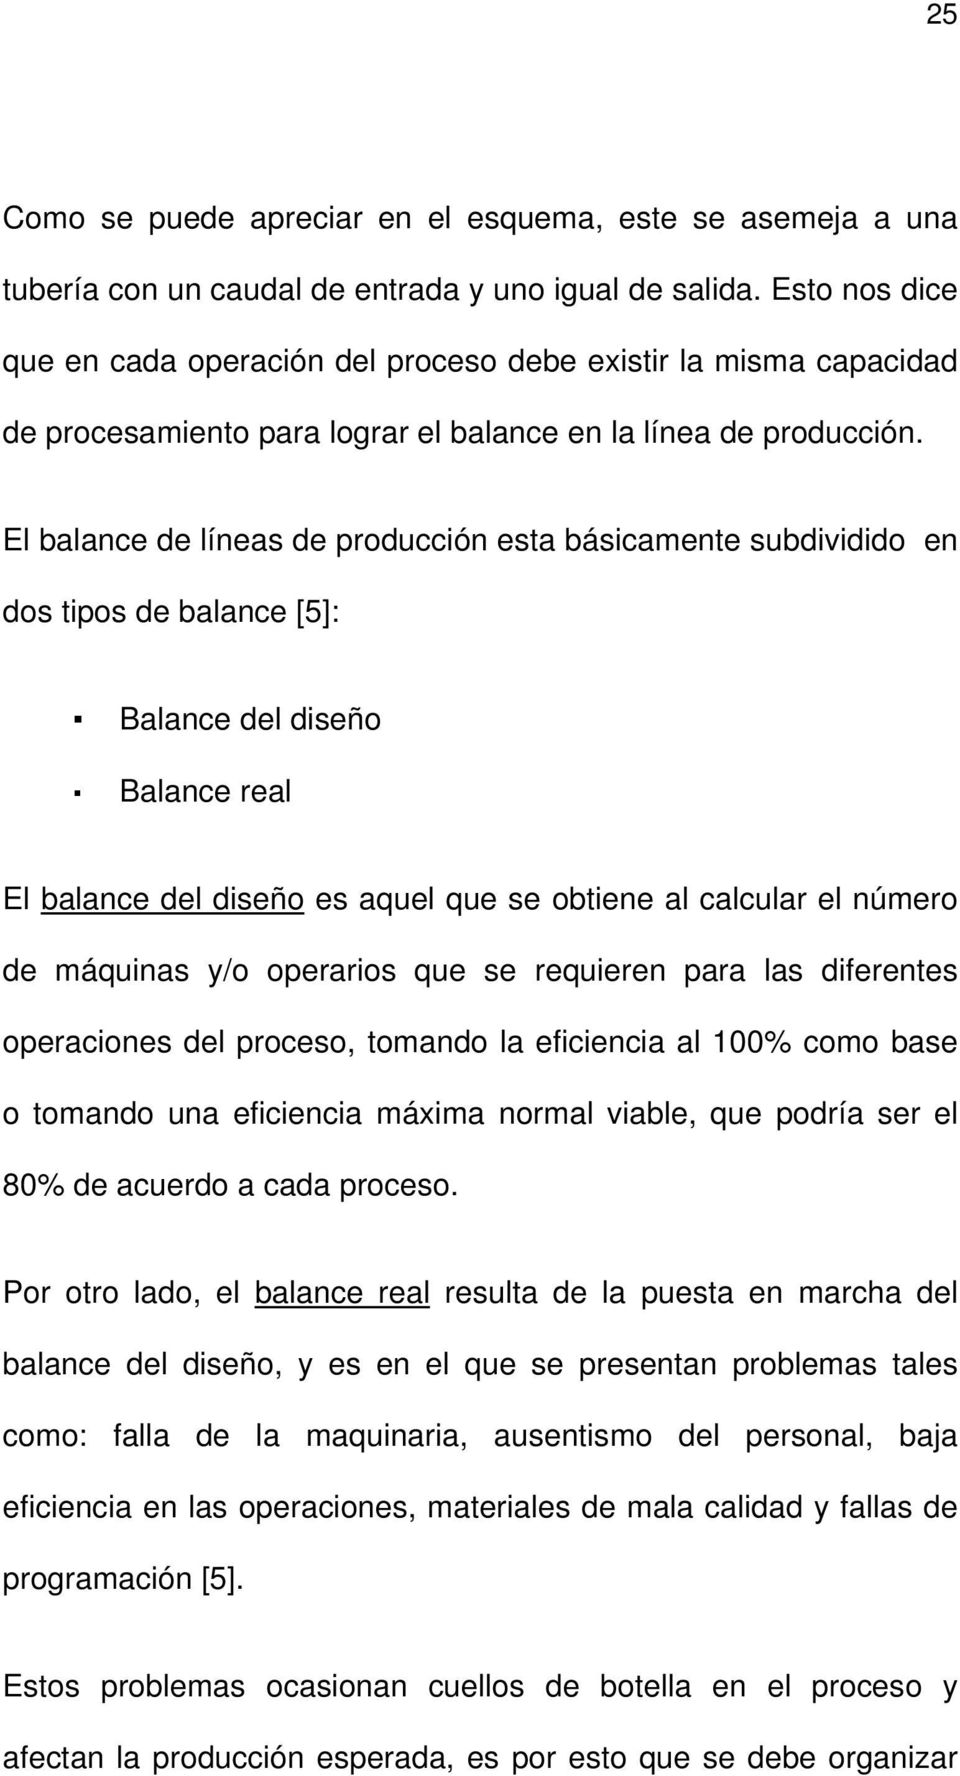 El balance de líneas de producción esta básicamente subdividido en dos tipos de balance [5]: Balance del diseño Balance real El balance del diseño es aquel que se obtiene al calcular el número de